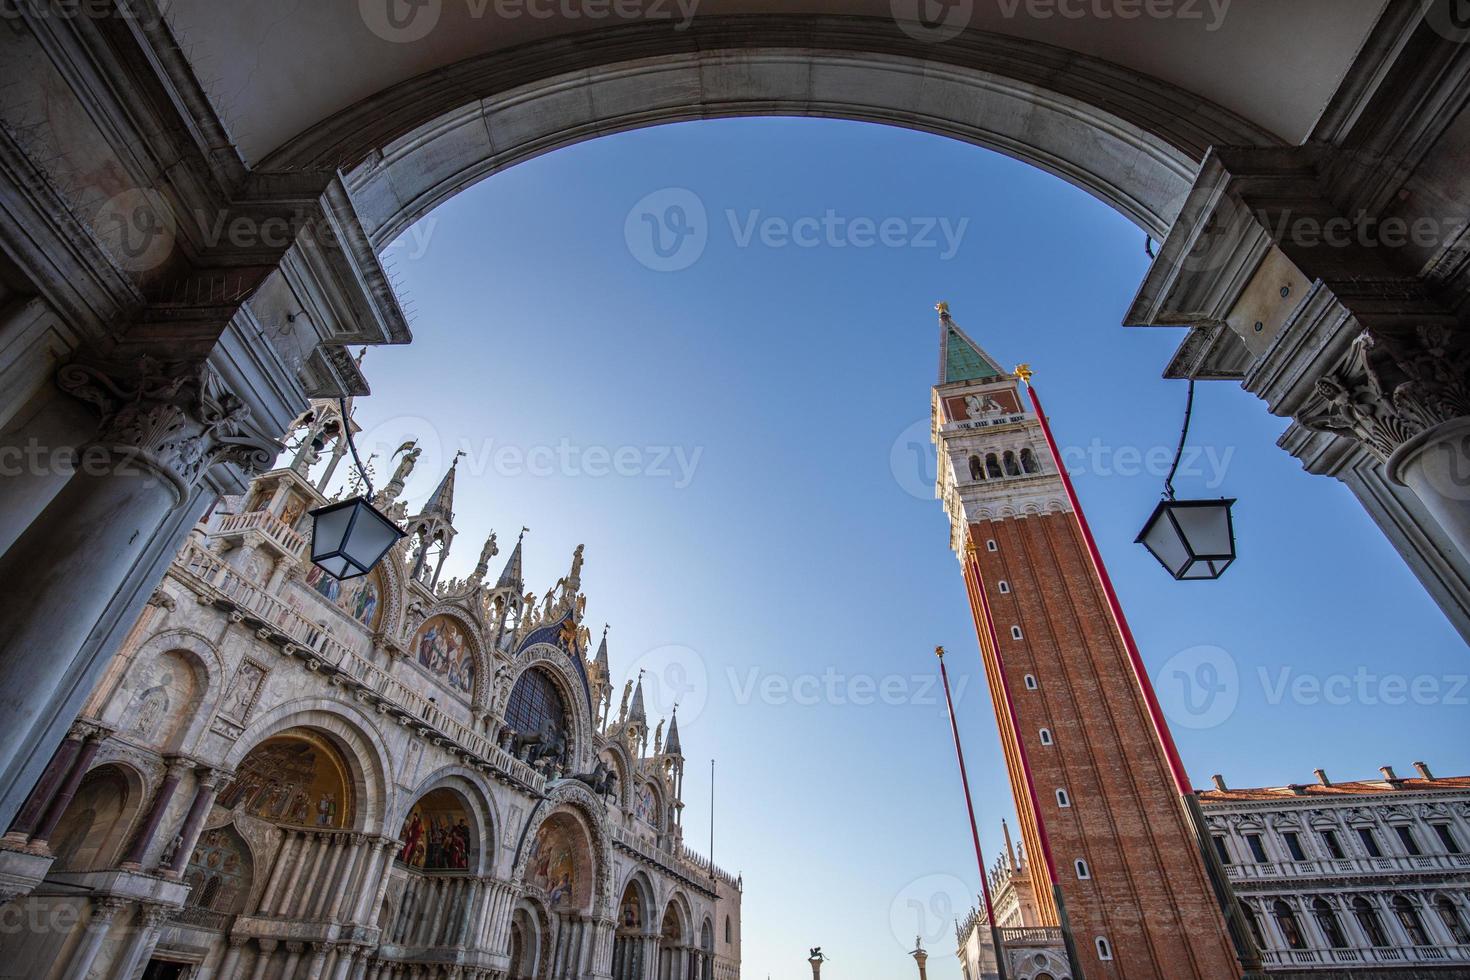 artistiek visie van san macro plein in vroeg ochtend- in Venetië zonder mensen, Venetië is meest populair reizen bestemming in Europa. laag hoek historisch toerist bestemming foto